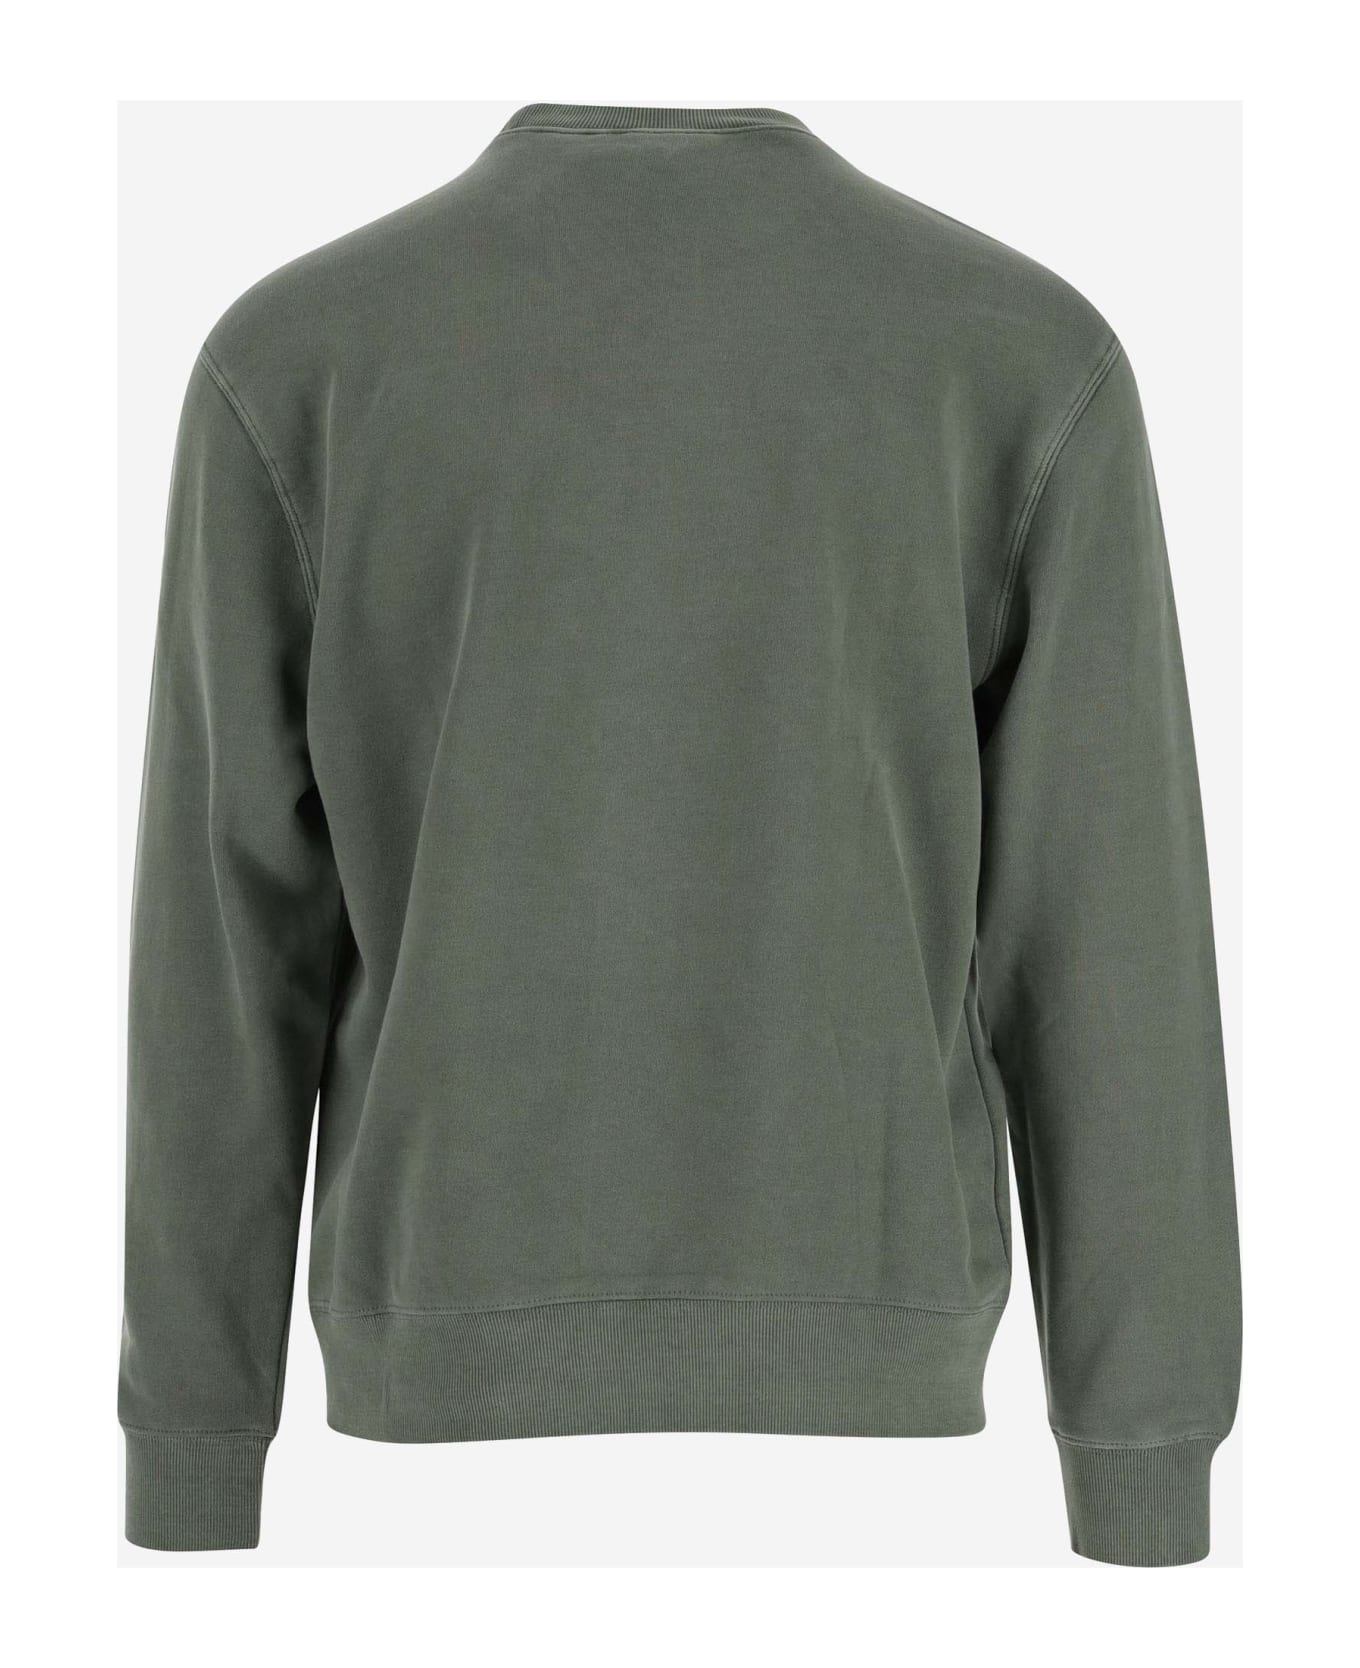 Carhartt Cotton Sweatshirt - Yfgd Park Garment Dyed フリース